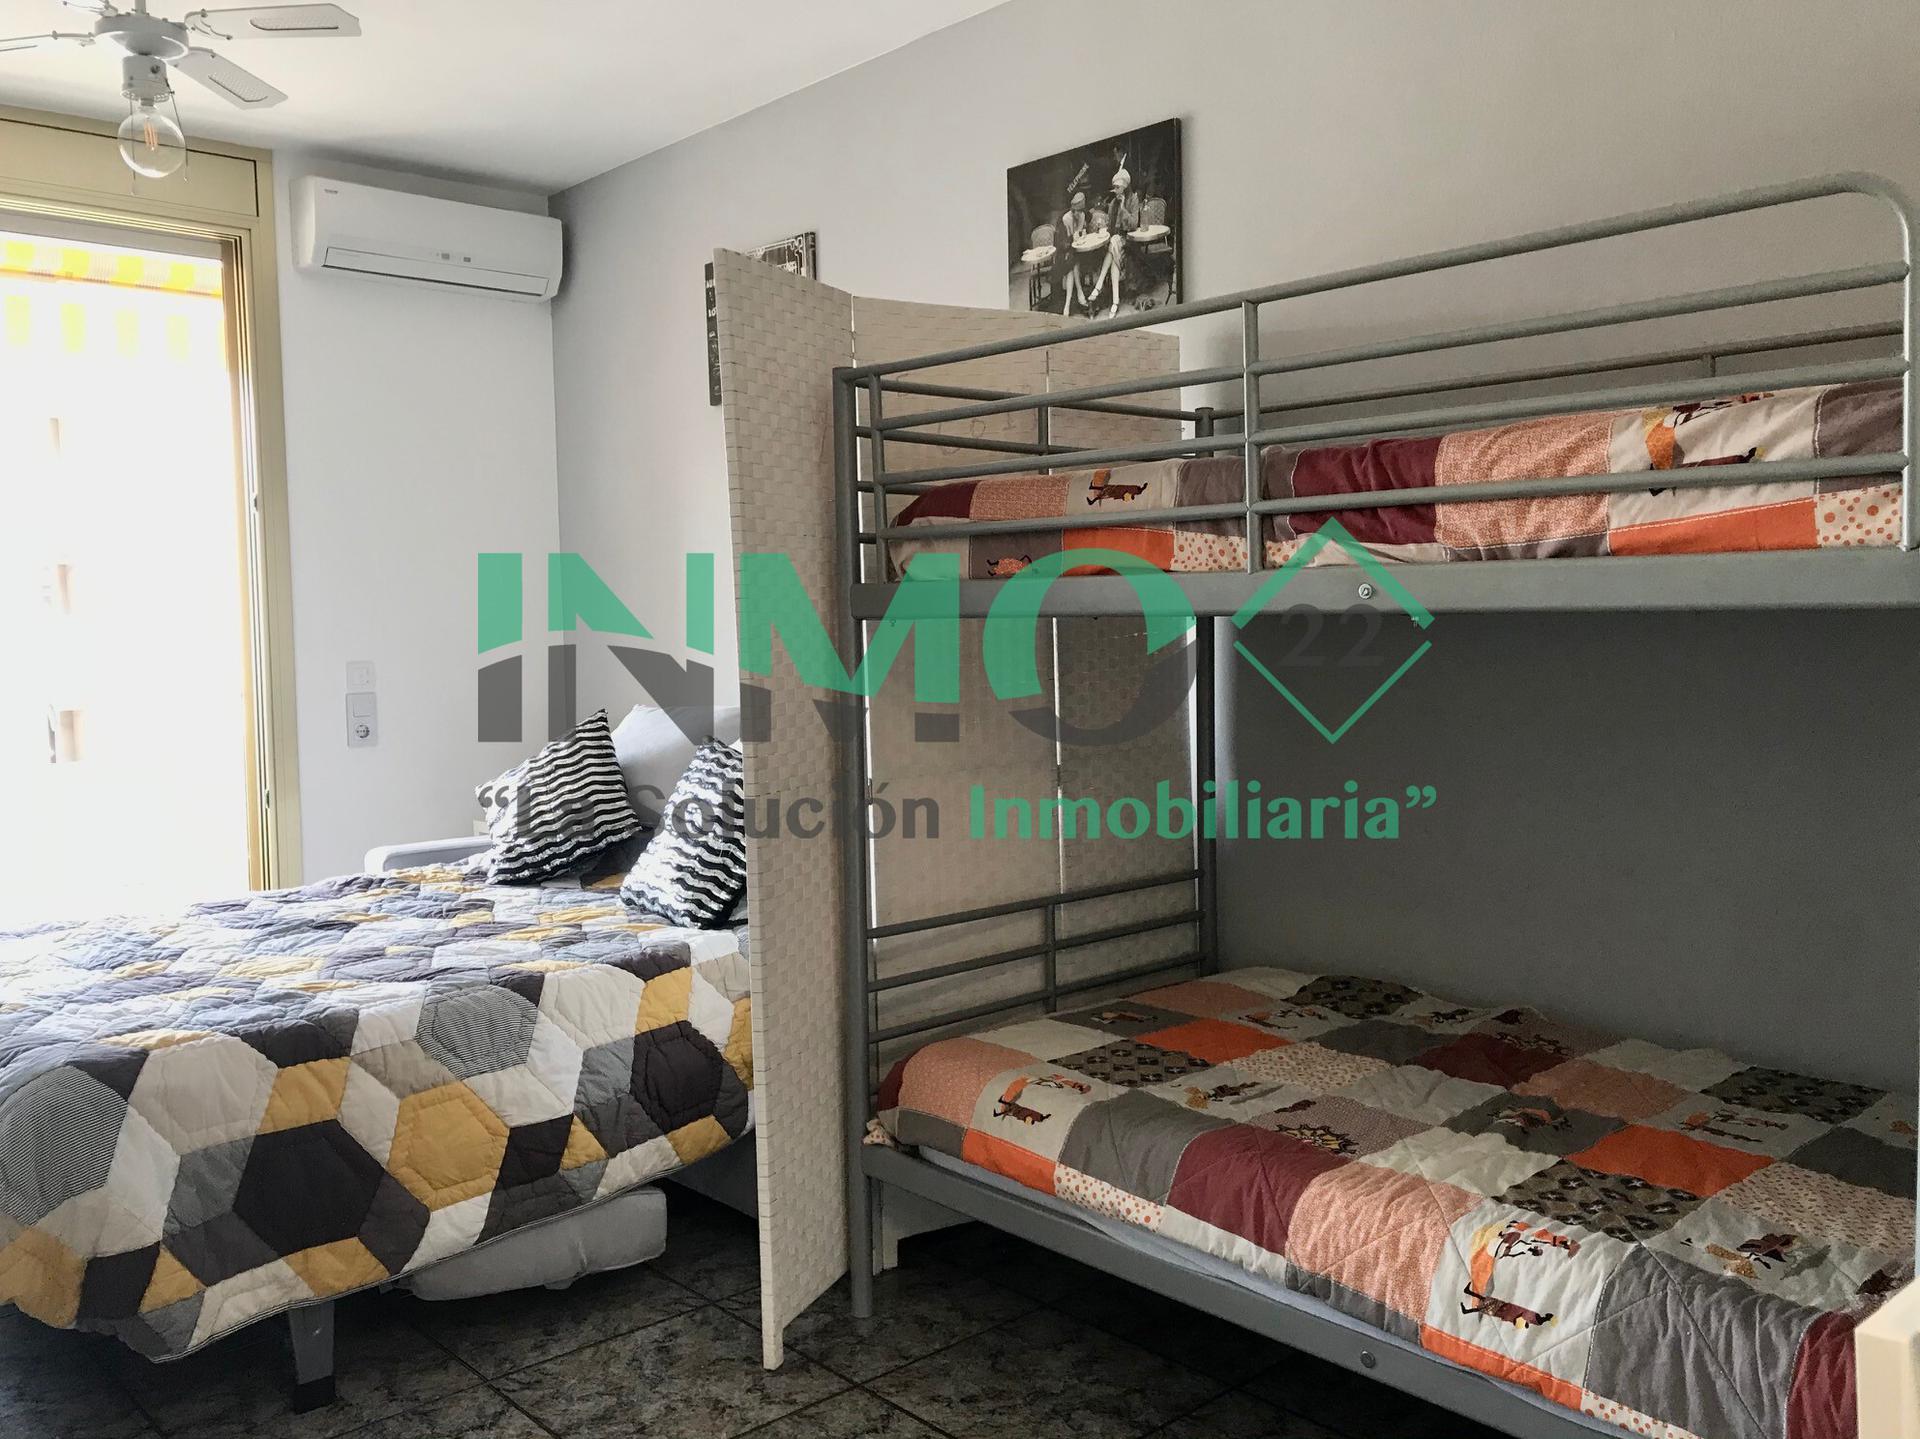 Apartament - Cambrils - 0 dormitoris - 0 ocupants